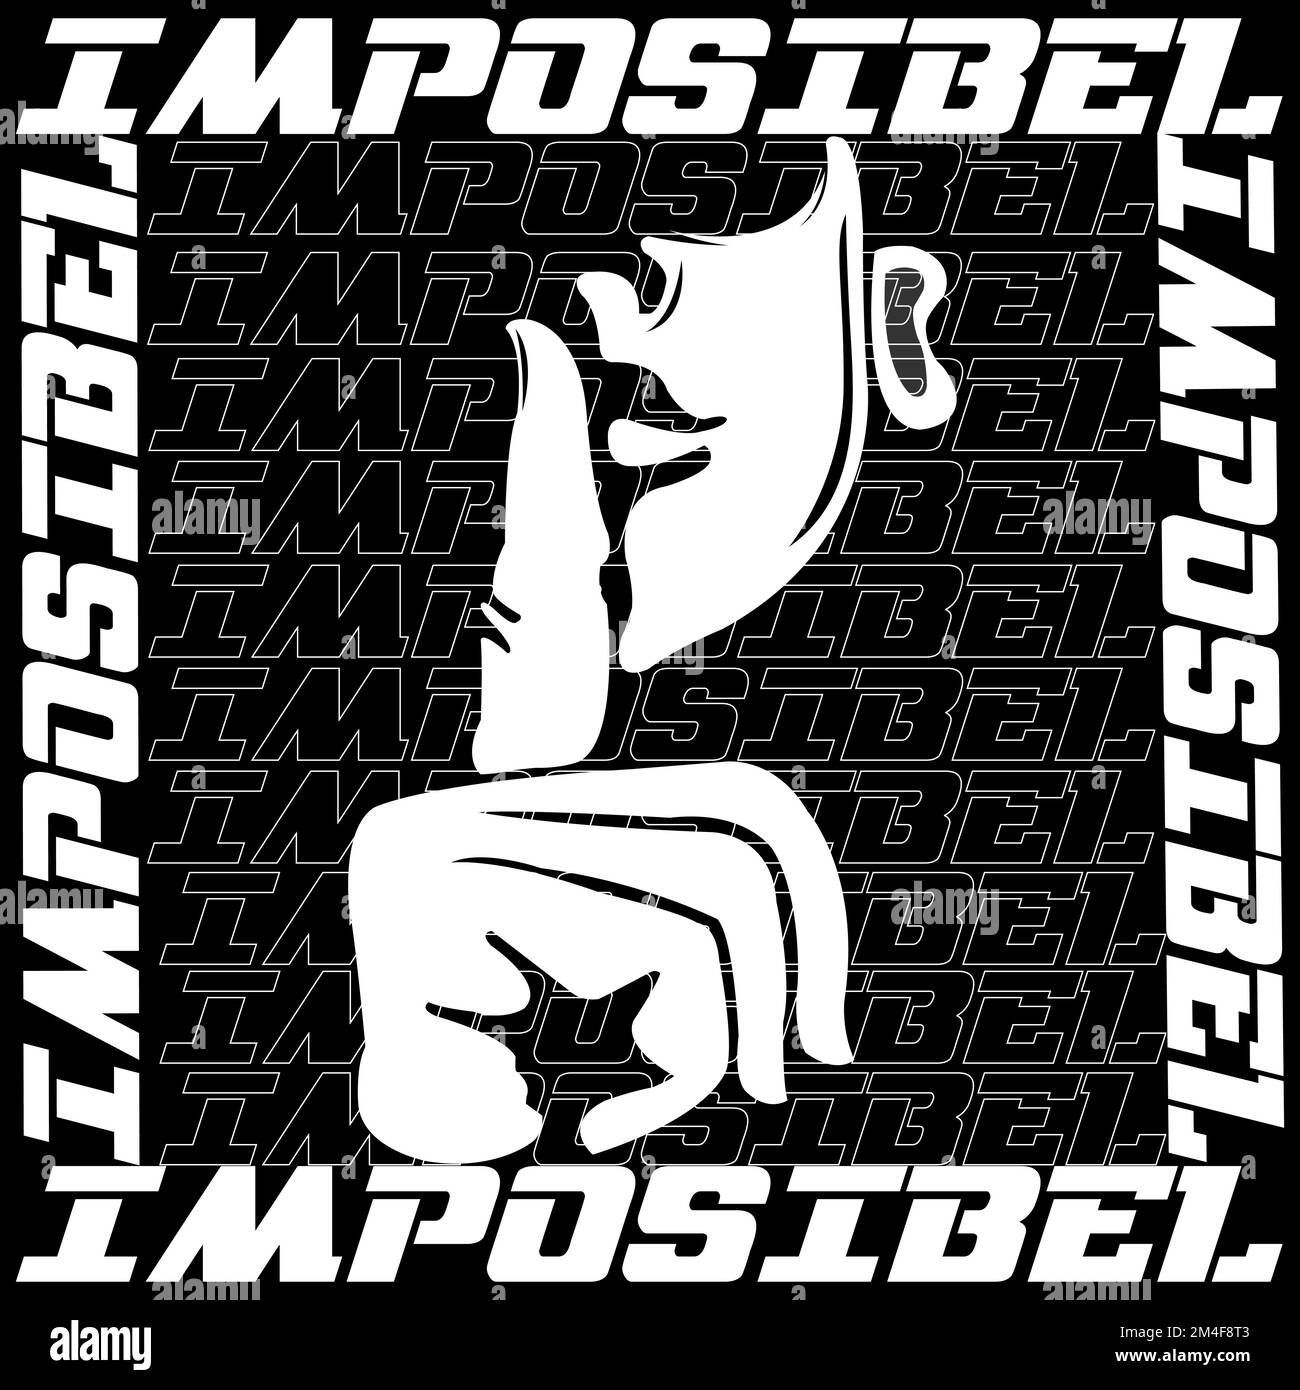 Slogan Premium Imposible, trendige Typografie Grafik T-Shirt Druck Vektor-ilustration Design.EPS 10 Stock Vektor